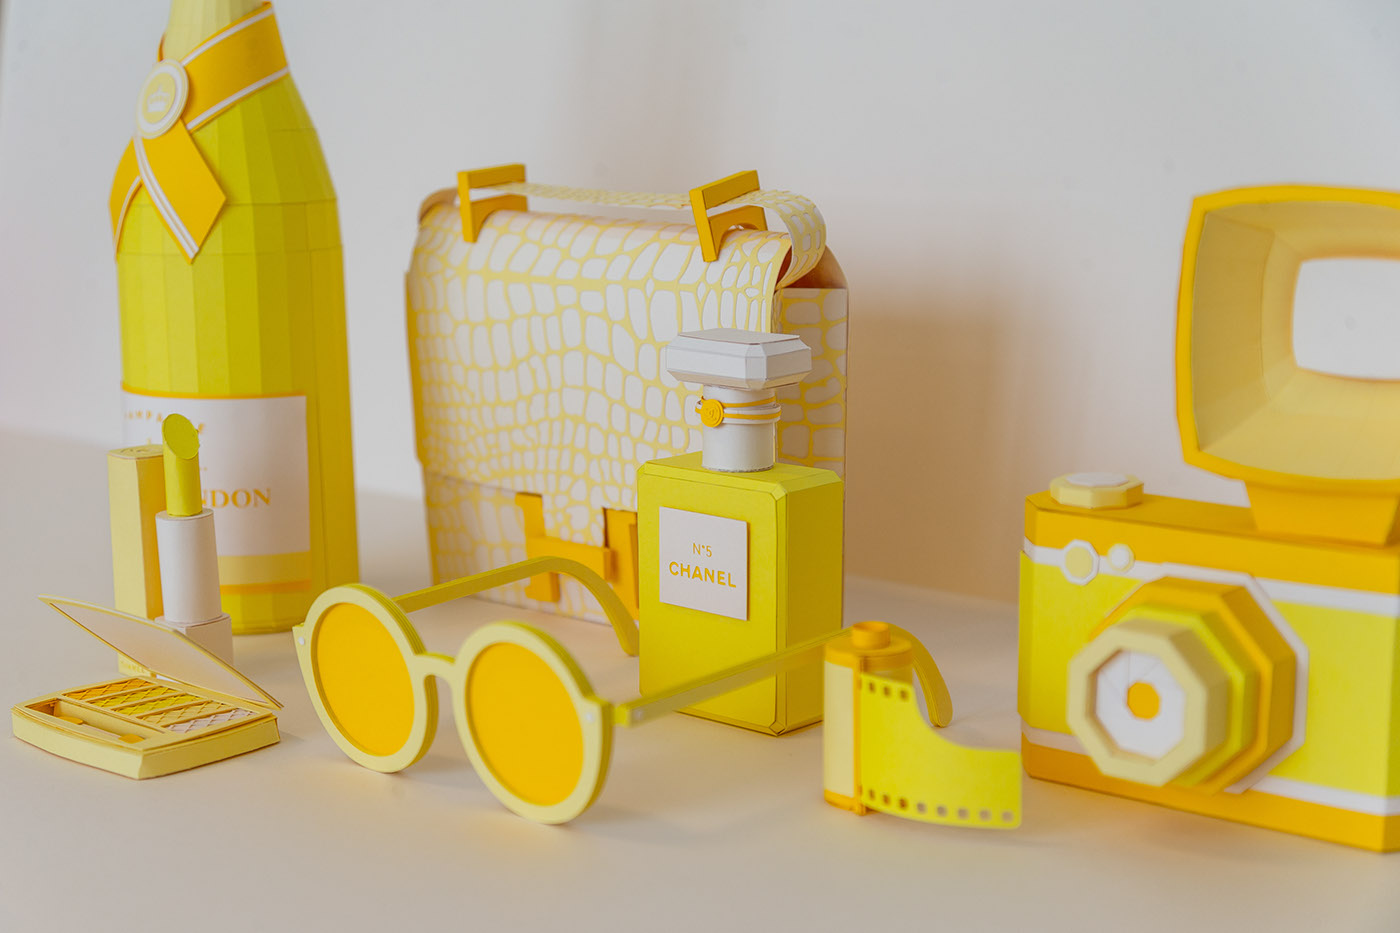 paper fashion week survivor kit yellow luxe Paris paper design chanel hermes moet et chandon